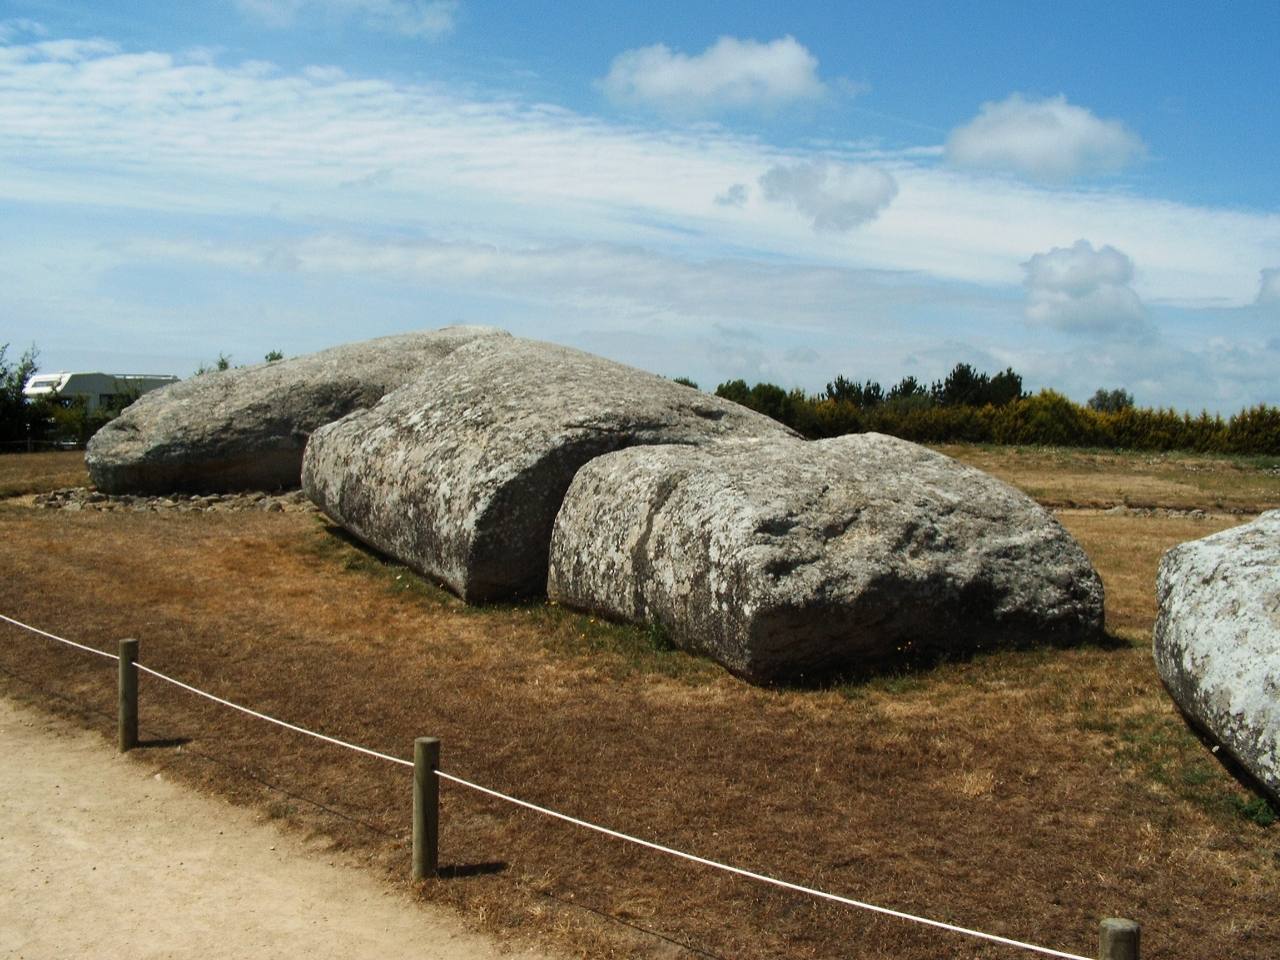 بلوک سنگی جابجا شده توسط مردمان باستانی که وزن آن دو برابر وزن مجسمه آزادی 1 است.